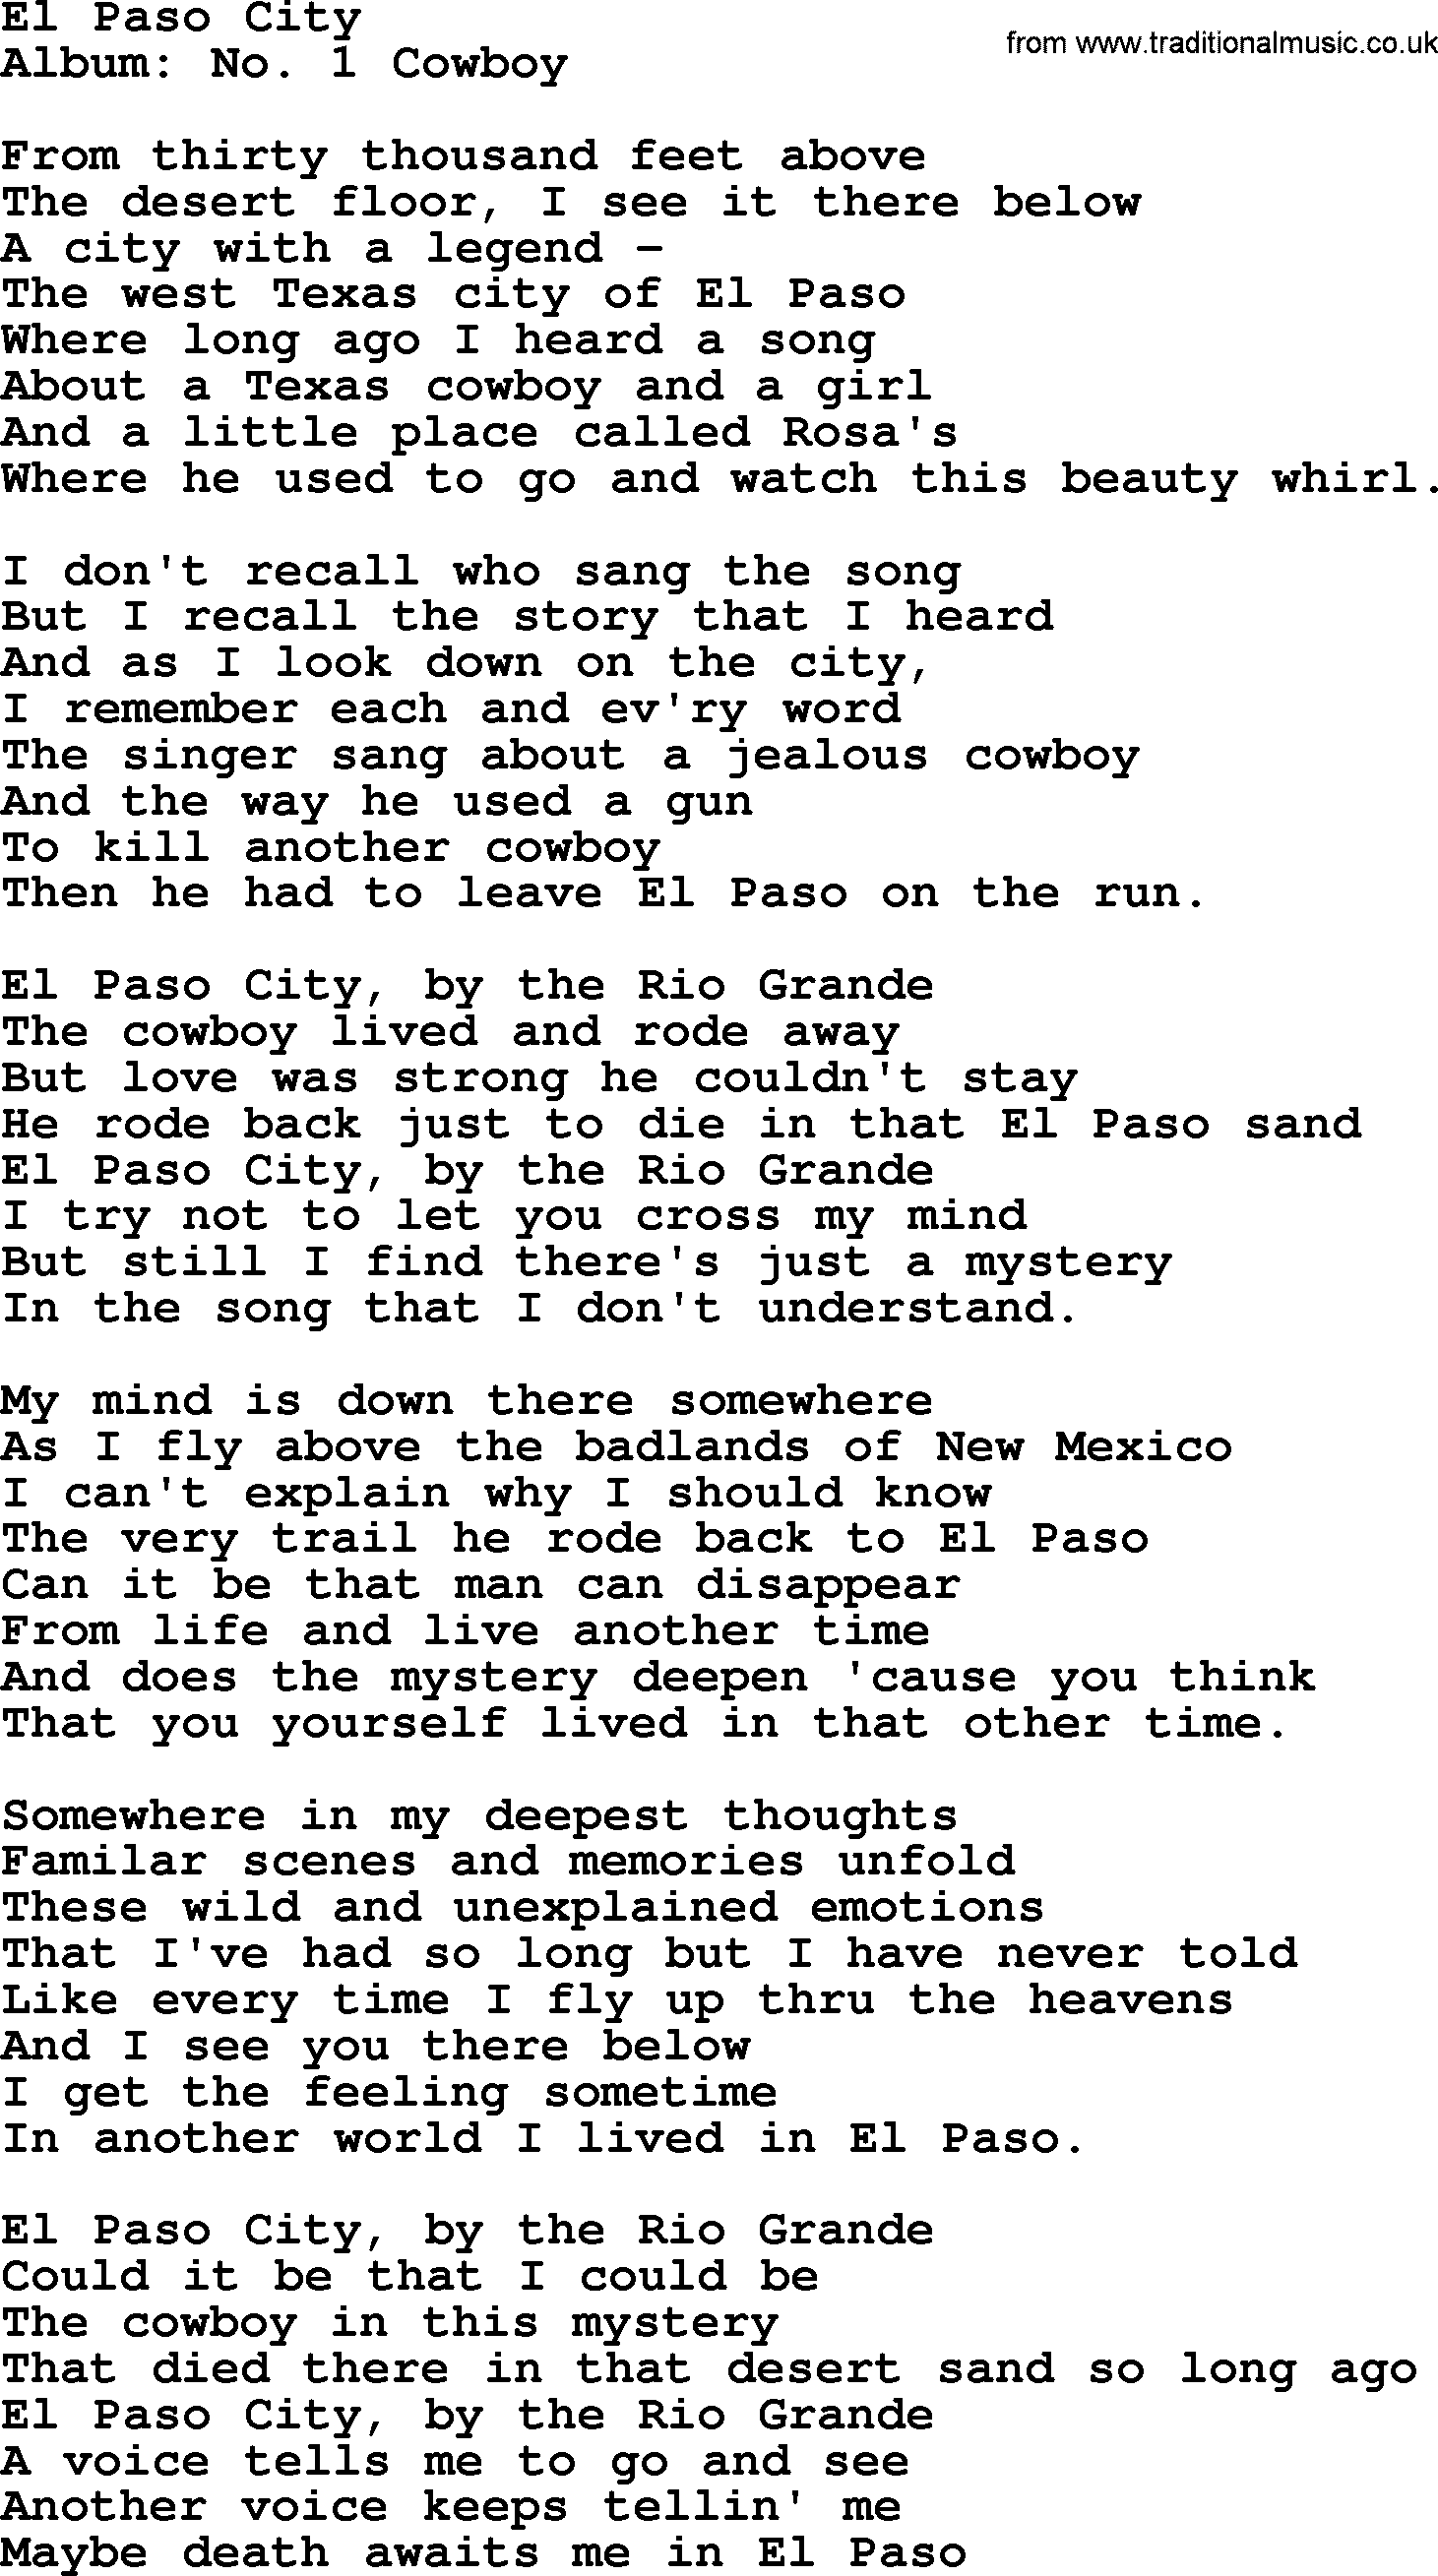 Marty Robbins song: El Paso City, lyrics